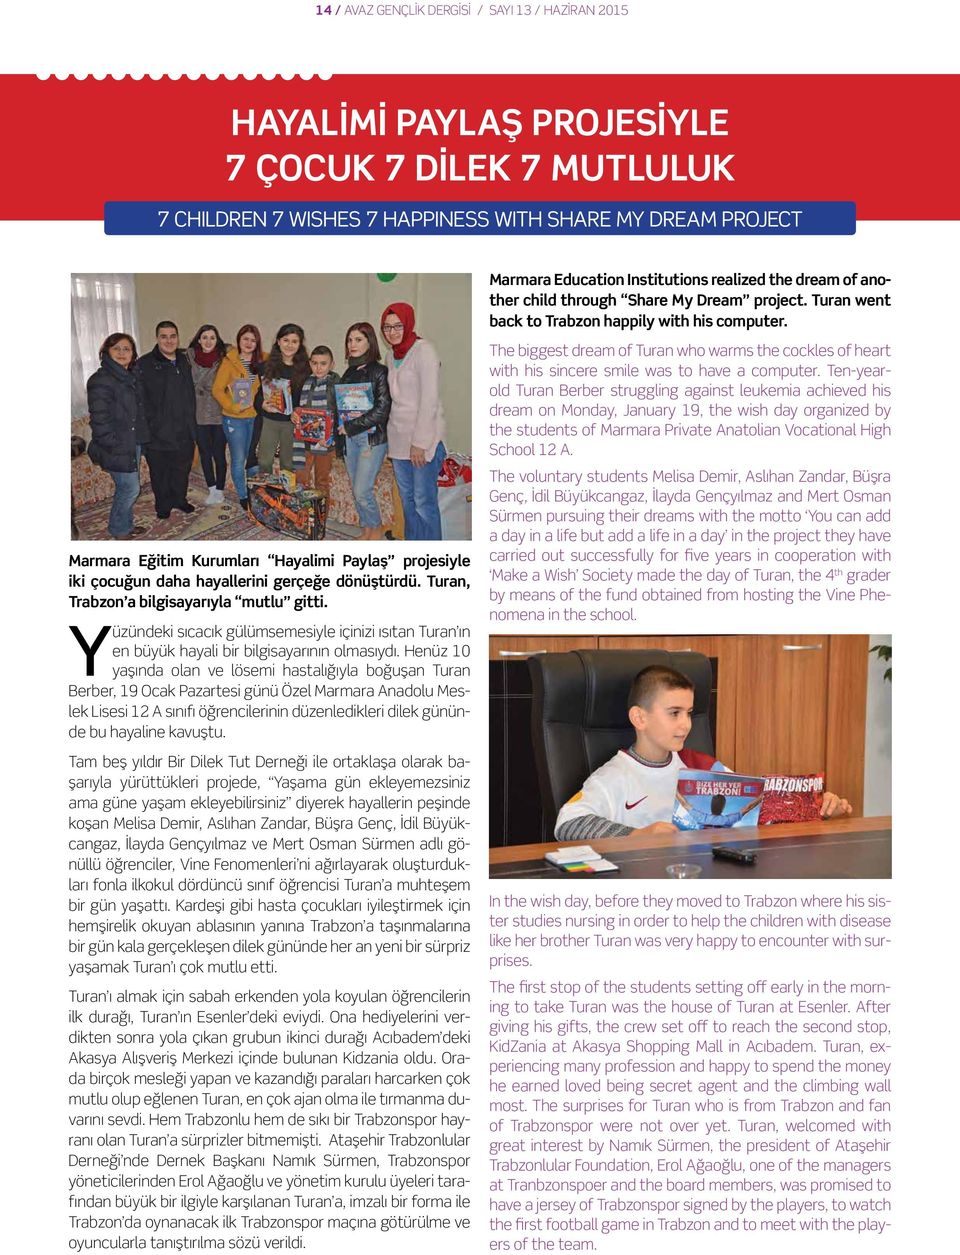 Marmara Eğitim Kurumları Hayalimi Paylaş projesiyle iki çocuğun daha hayallerini gerçeğe dönüştürdü. Turan, Trabzon a bilgisayarıyla mutlu gitti.